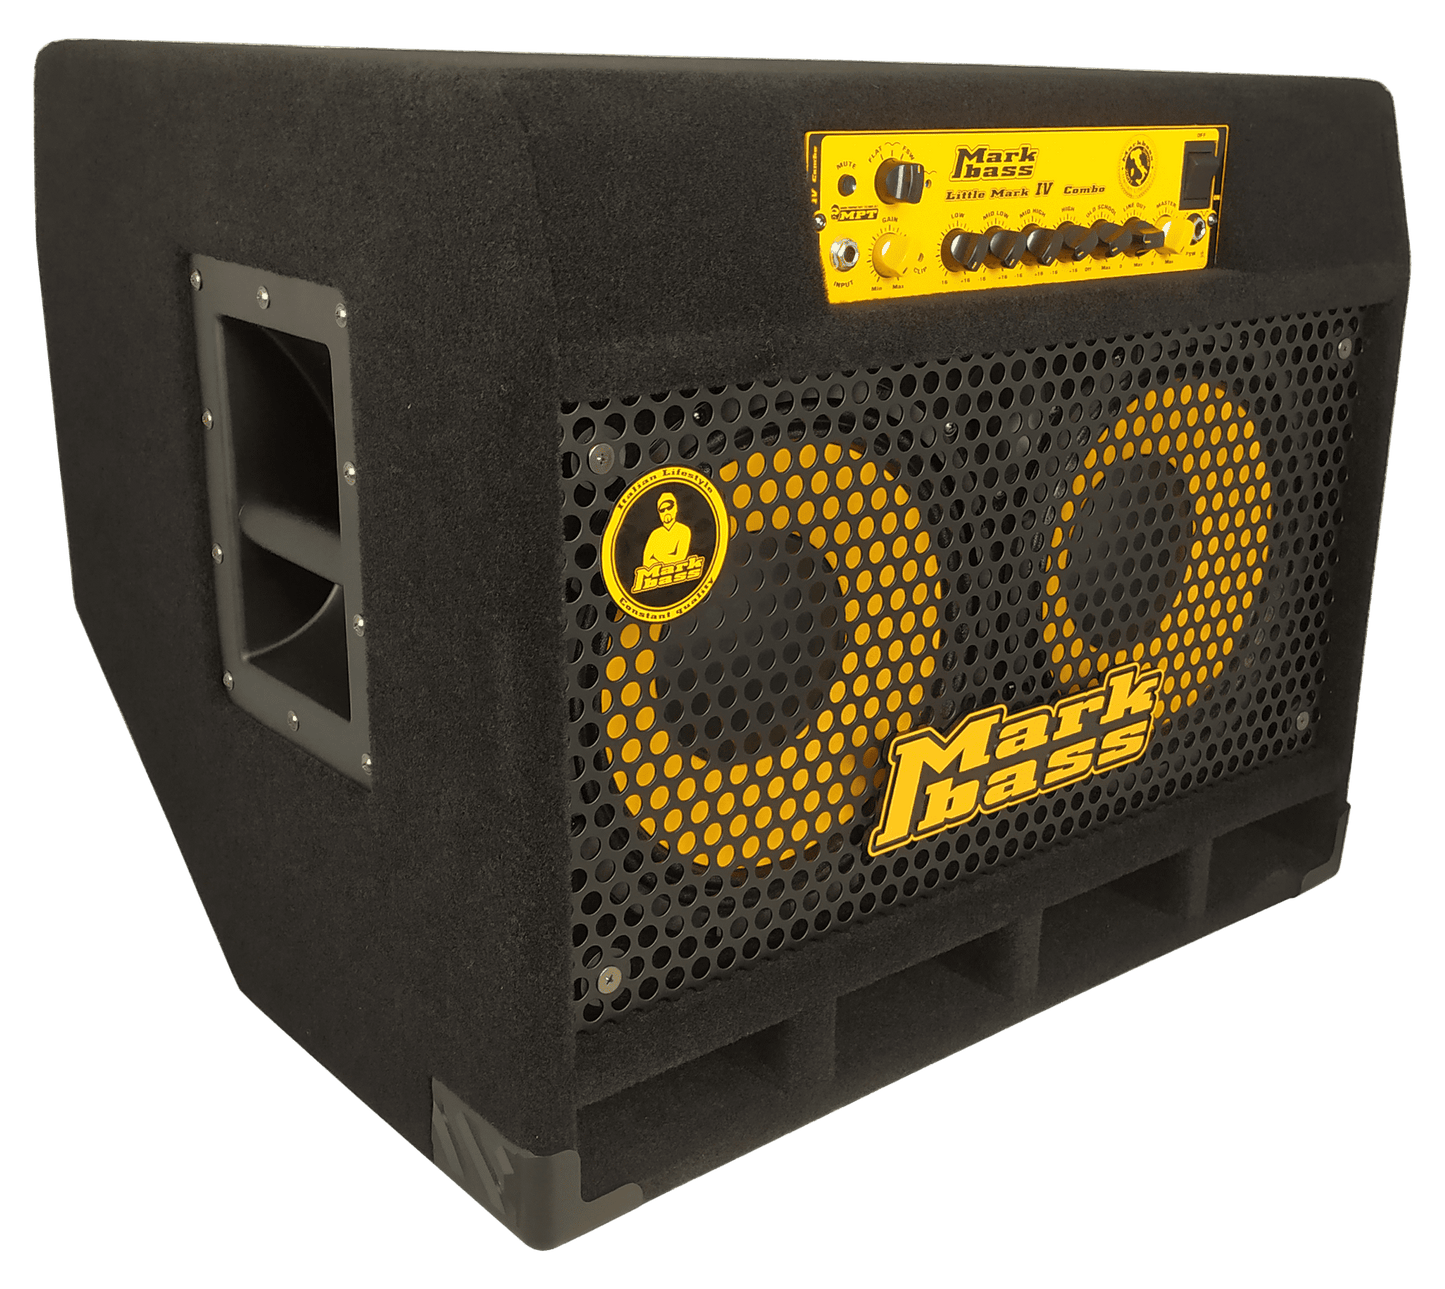 CMD 102P IV - Markbass 2x10 300W Bass Combo Amplifier